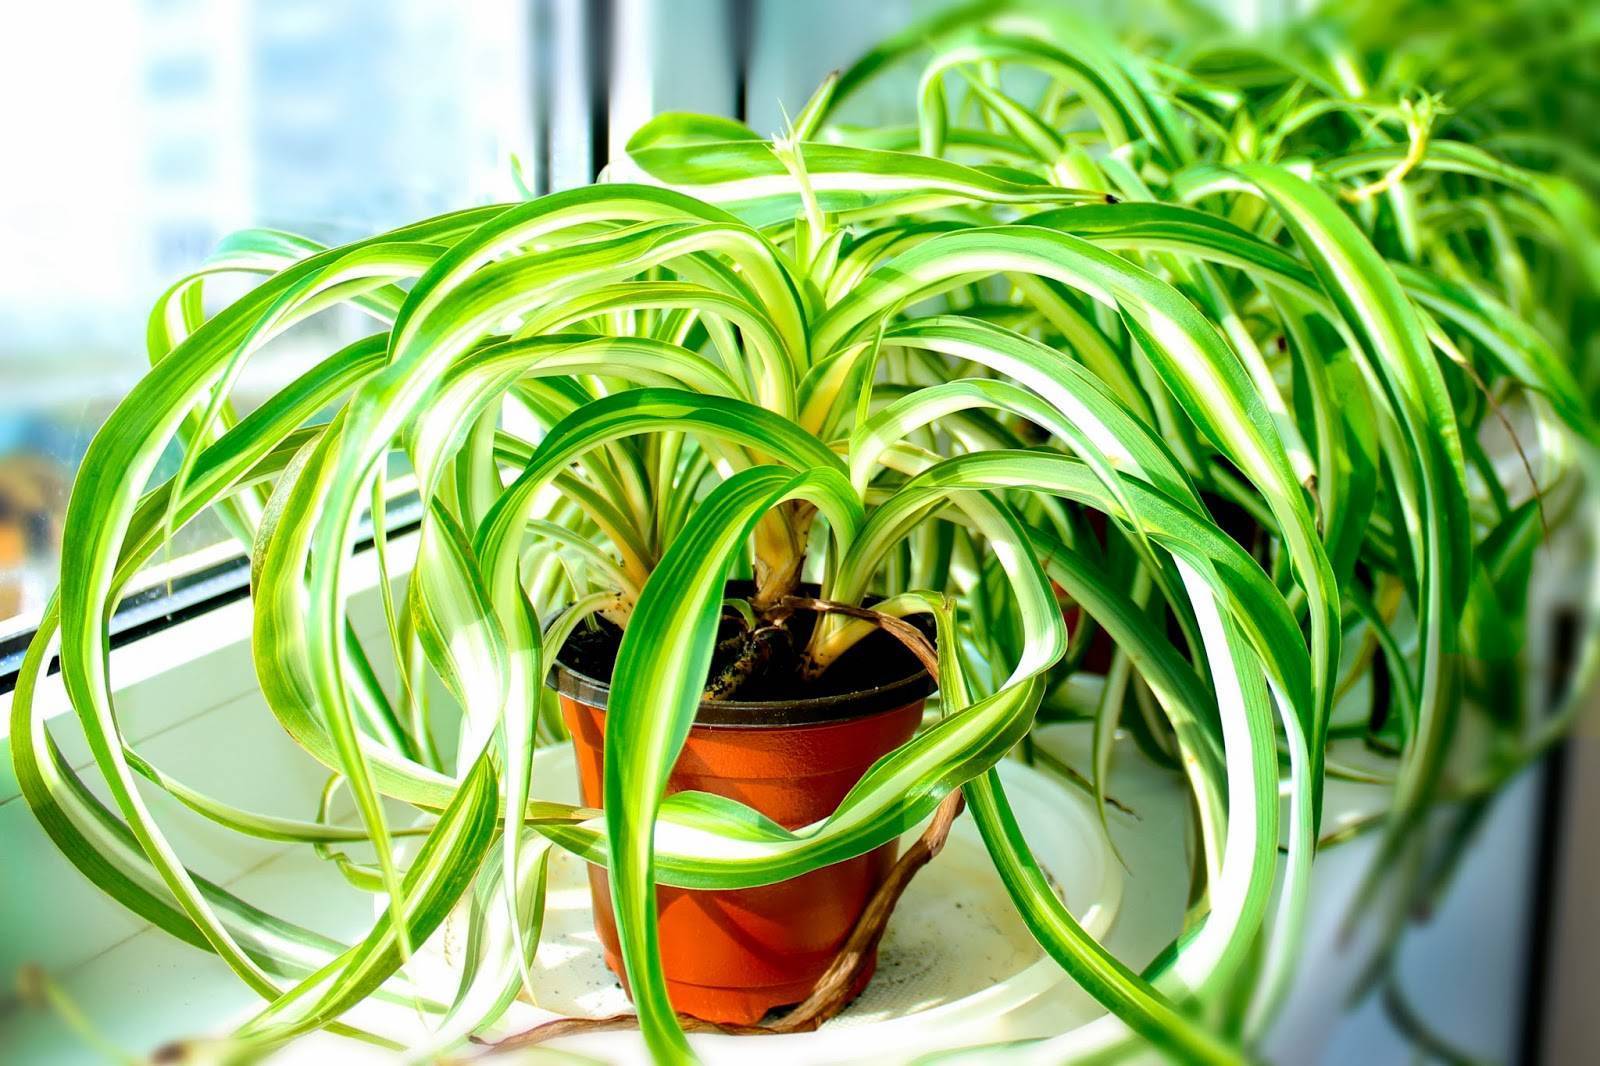 23 комнатных растений, которые очищают воздух в помещении | клуб цветоводов